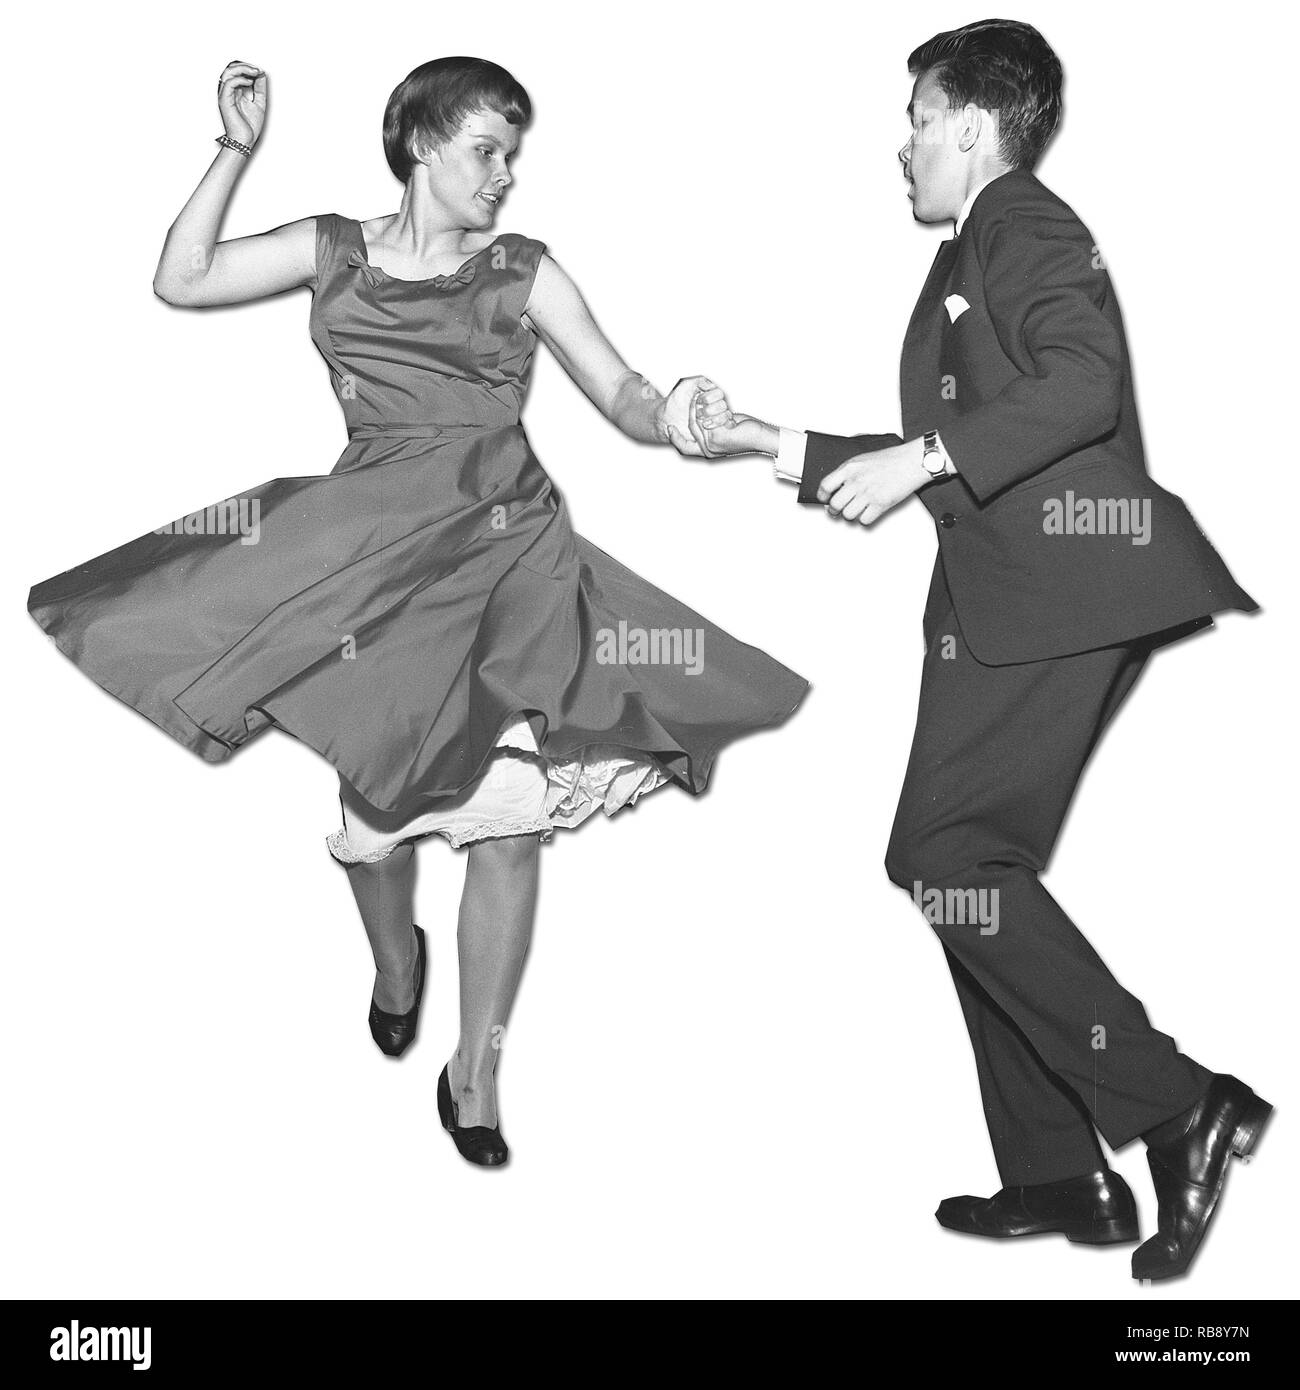 Danser dans les années 50. Un jeune couple est de danser et de passer à la musique. Photo Suède Kristoffersson. Ref CC22-8 Banque D'Images